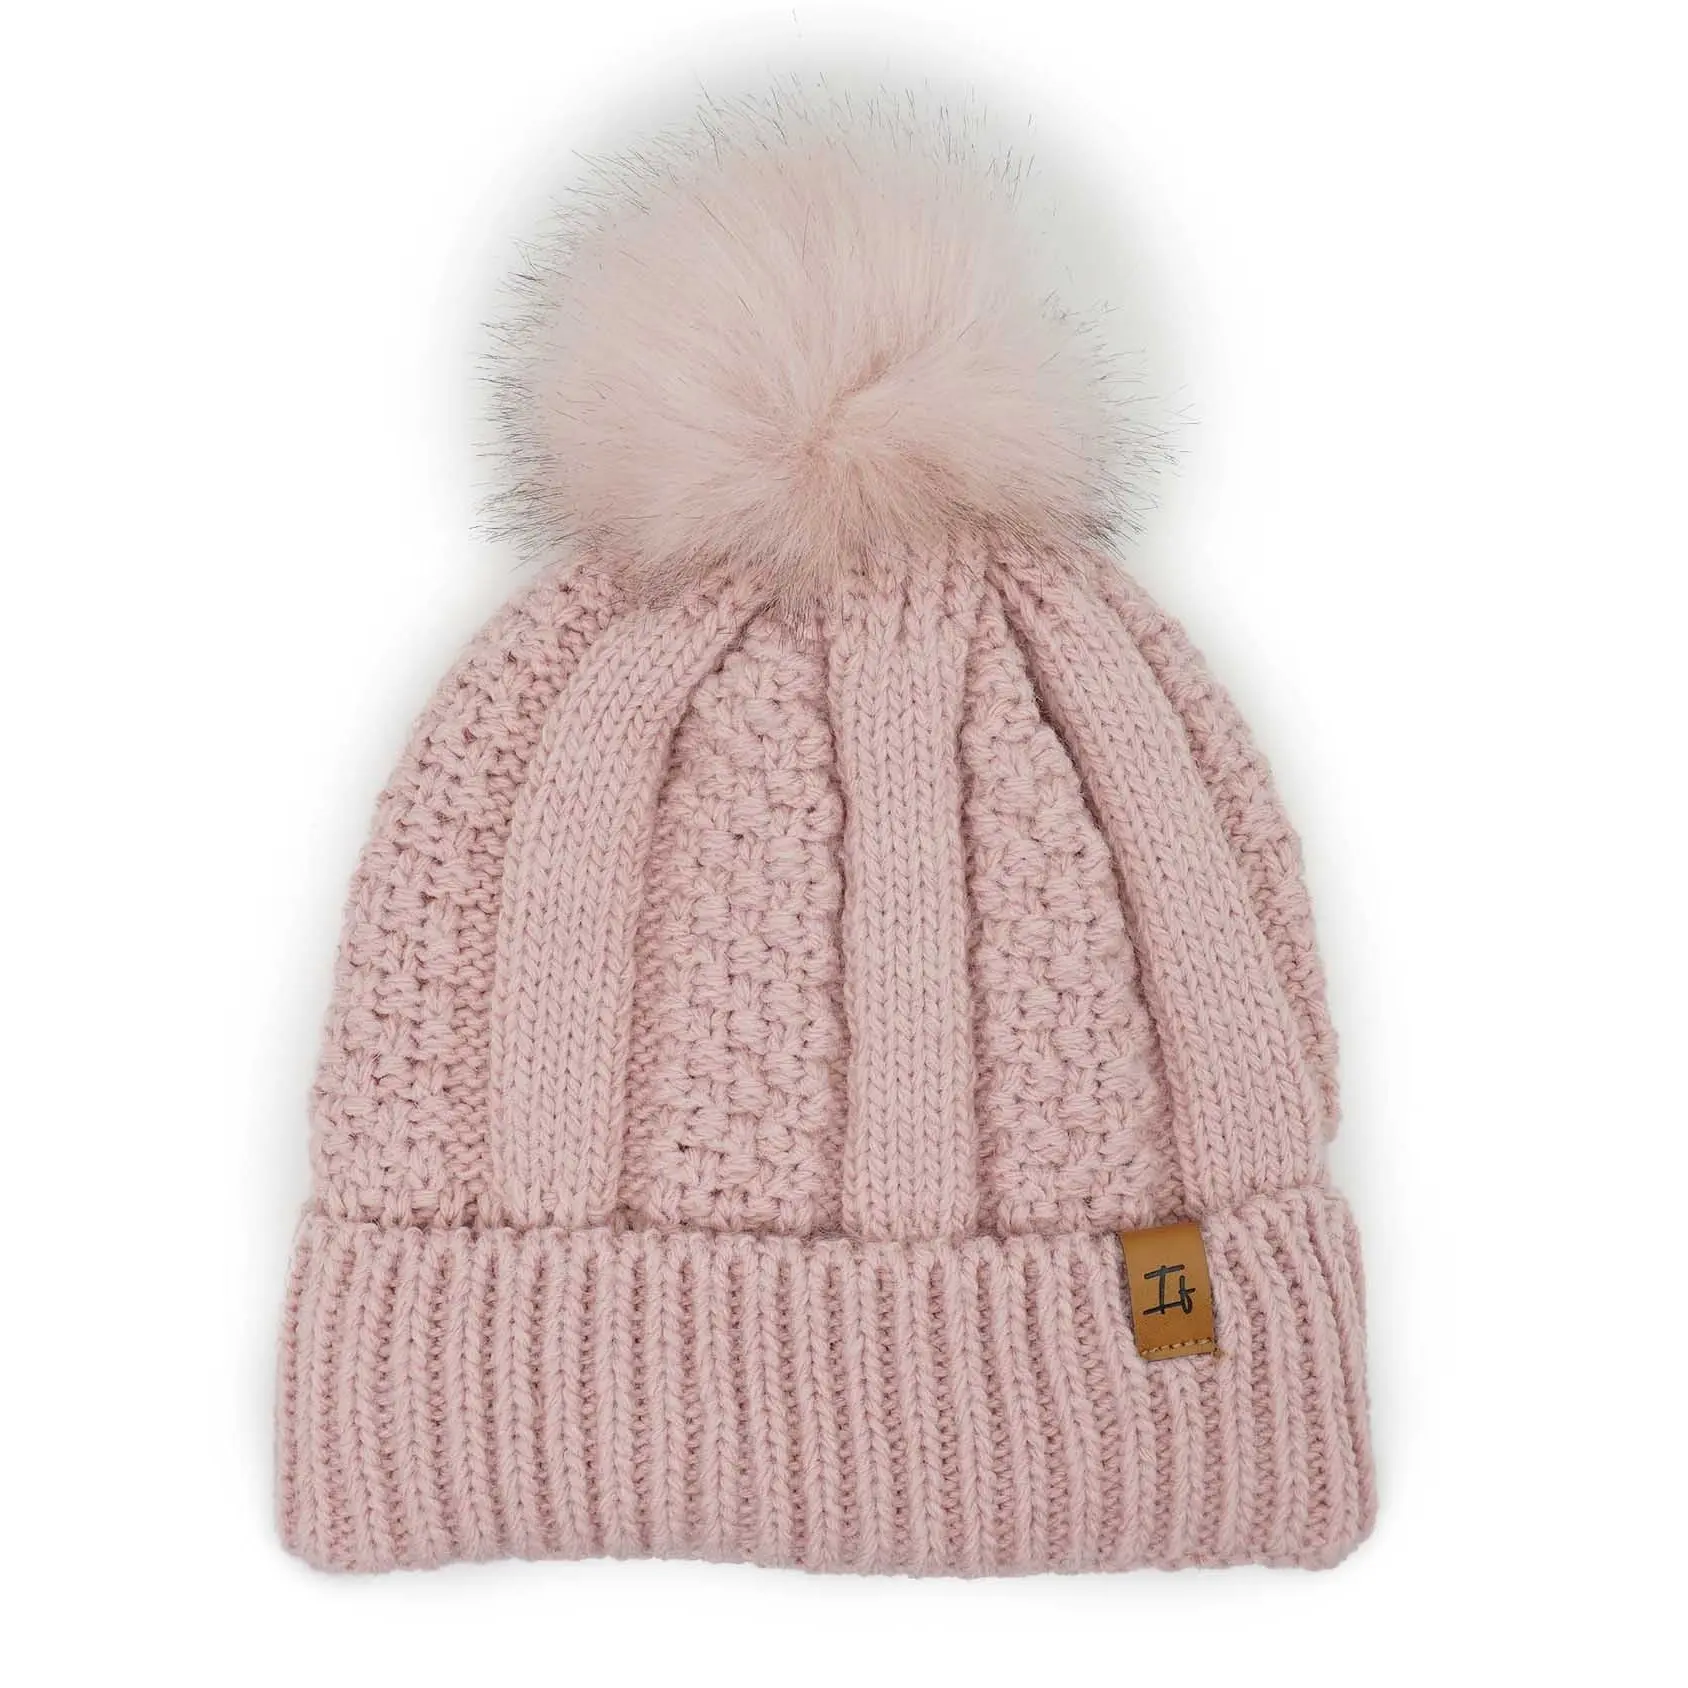 Nuovo stile inverno moda Soild colore Crochet Jacquard berretto lavorato a maglia con pompon in pelliccia sintetica per le donne